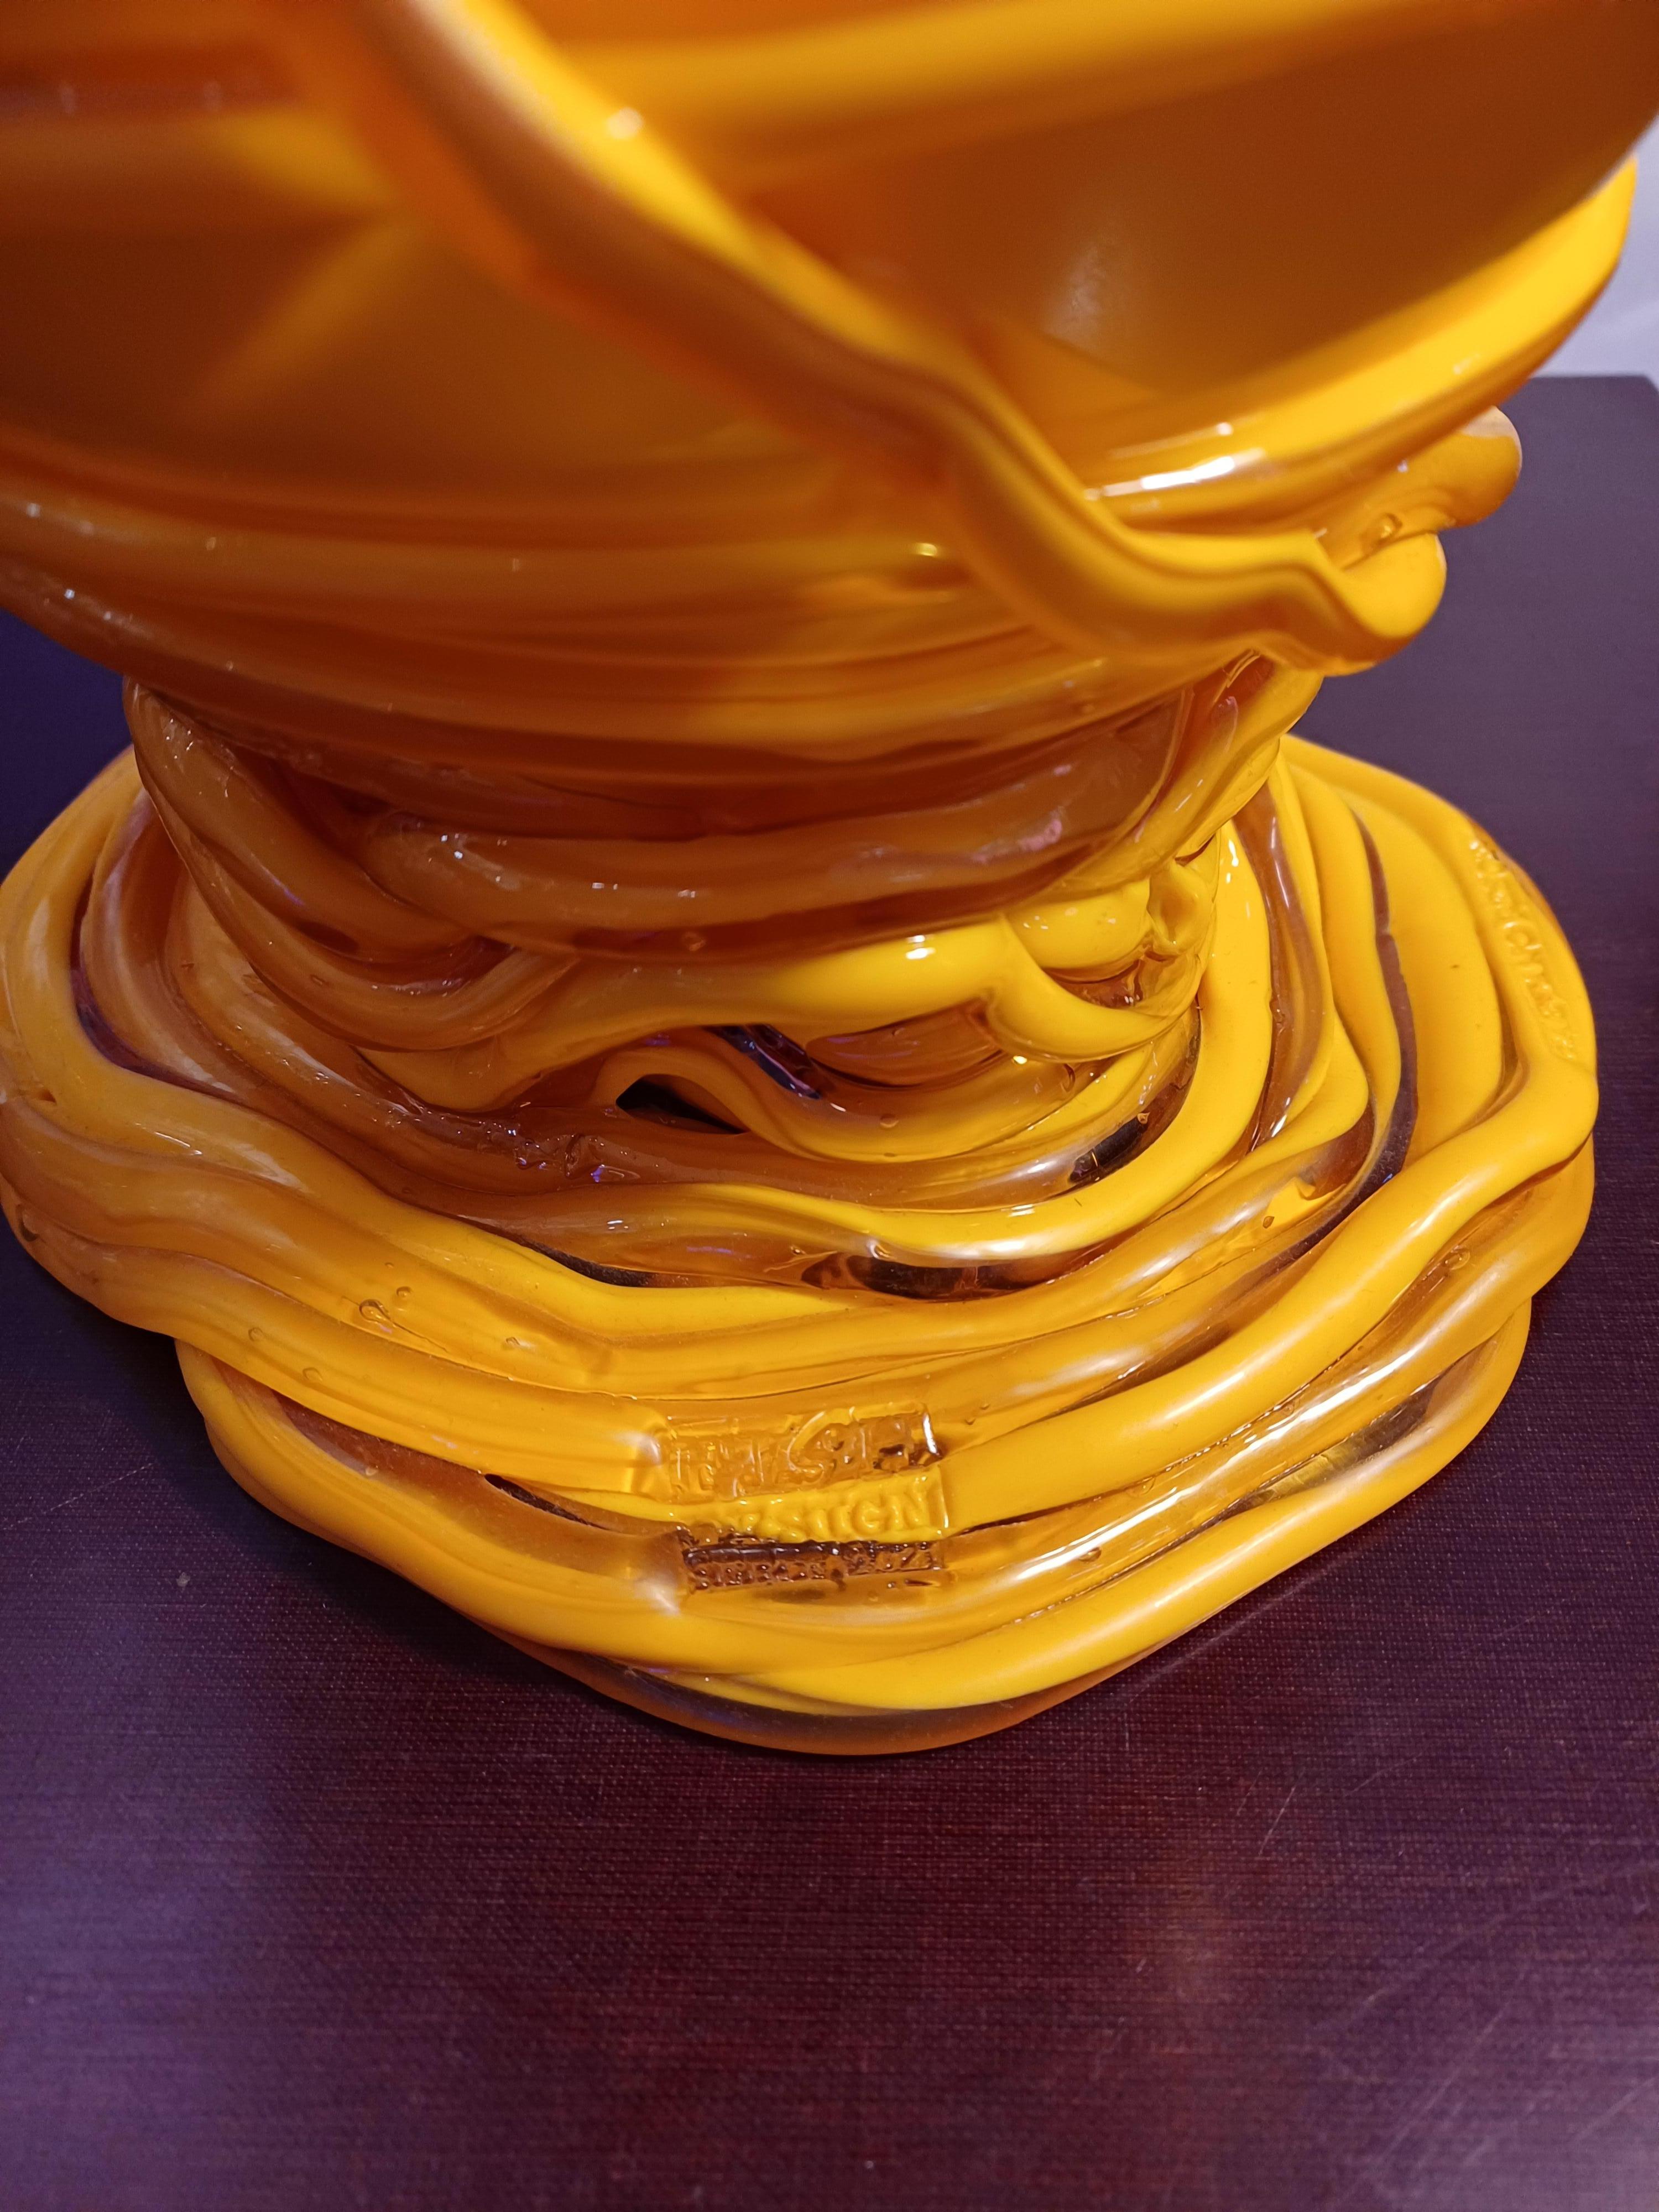 Vaso in resina giallo disegnato da Gaetano Pesce e prodotto dalla Fish Design.
Marchiato alla base, con certificato di autenticità.
Misure: diametro 24 cm, altezza 38 cm